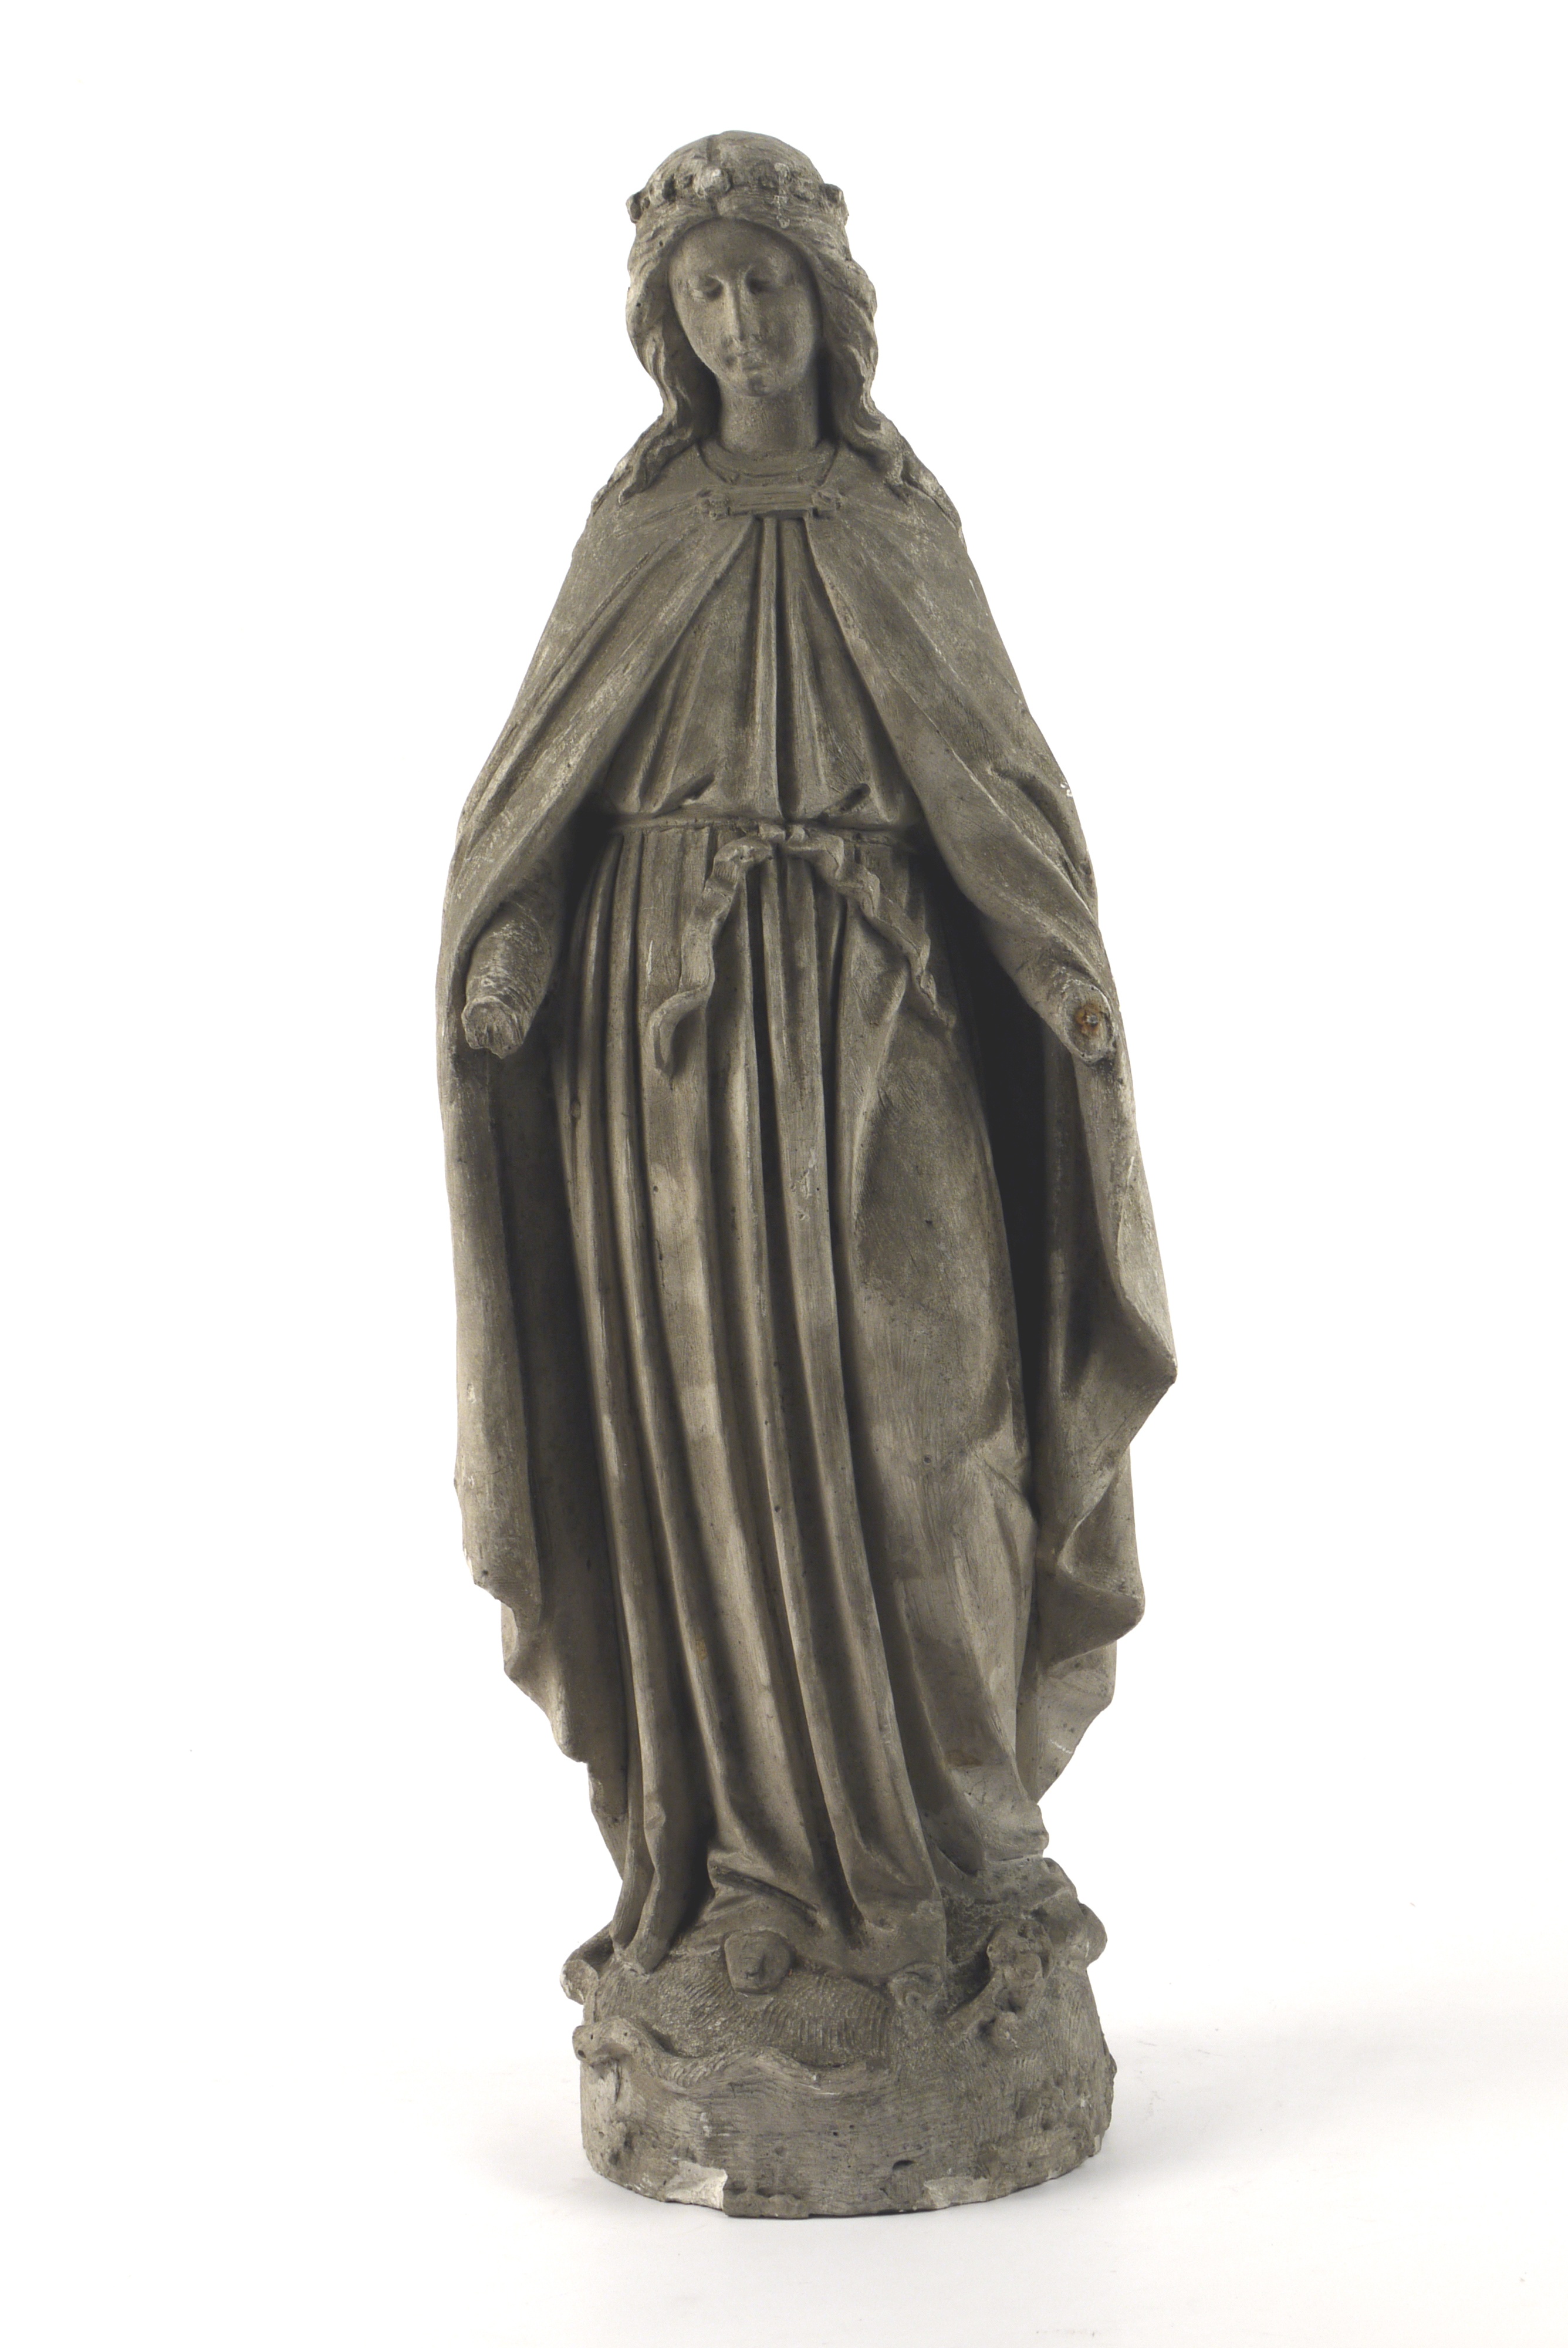 Maria Immaculata Conceptio (Historisches Museum der Pfalz, Speyer CC BY)